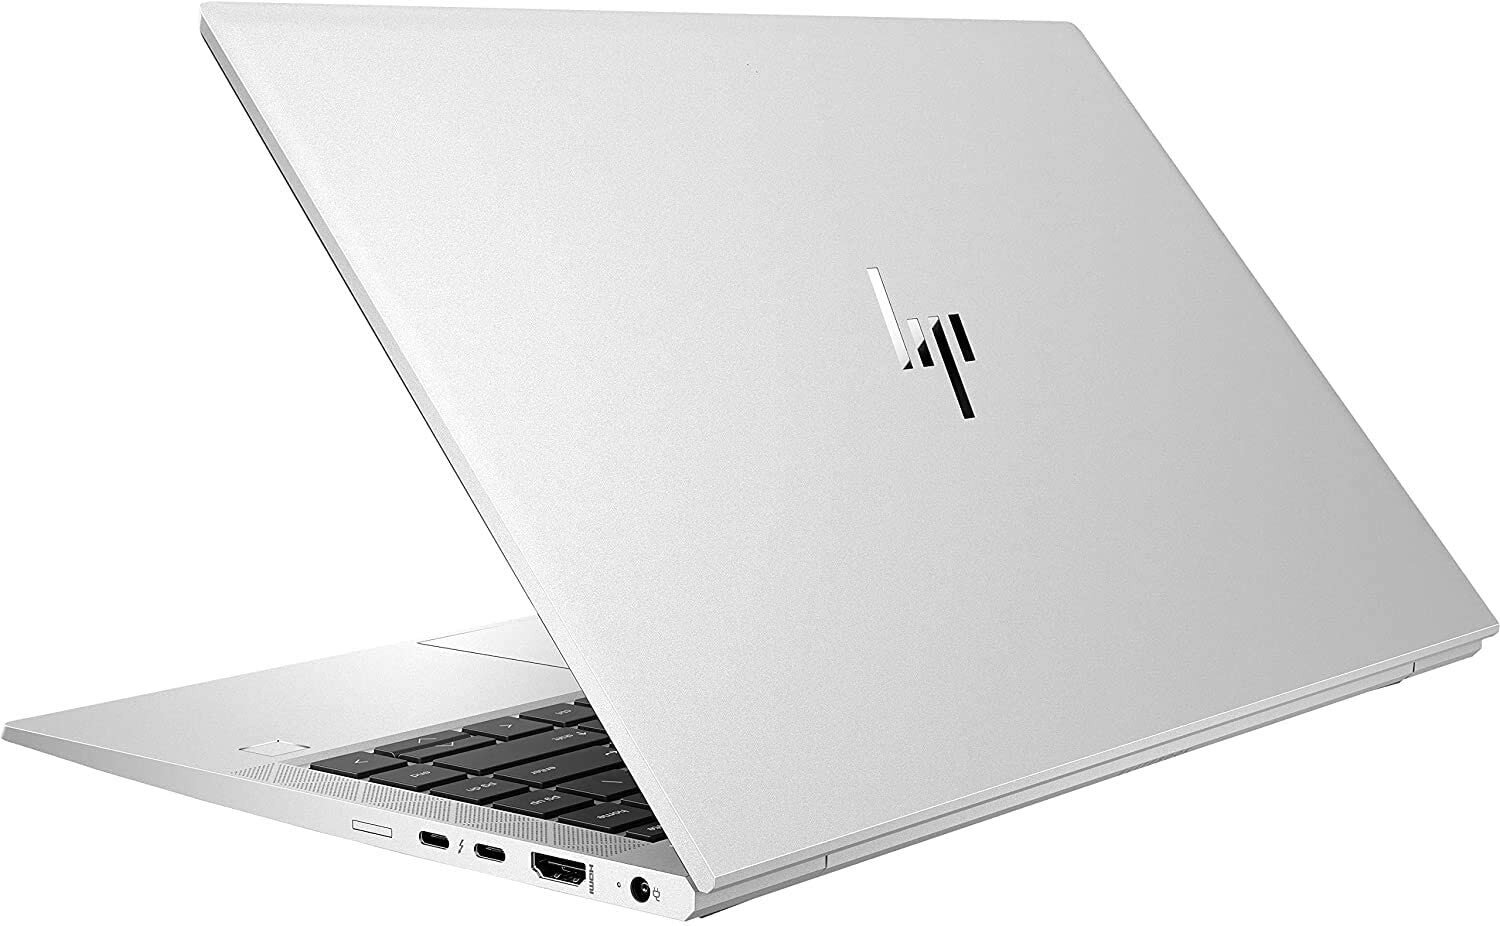 Buy HP EliteBook 840 G7 Notebook PC online in Pakistan Tejar.pk